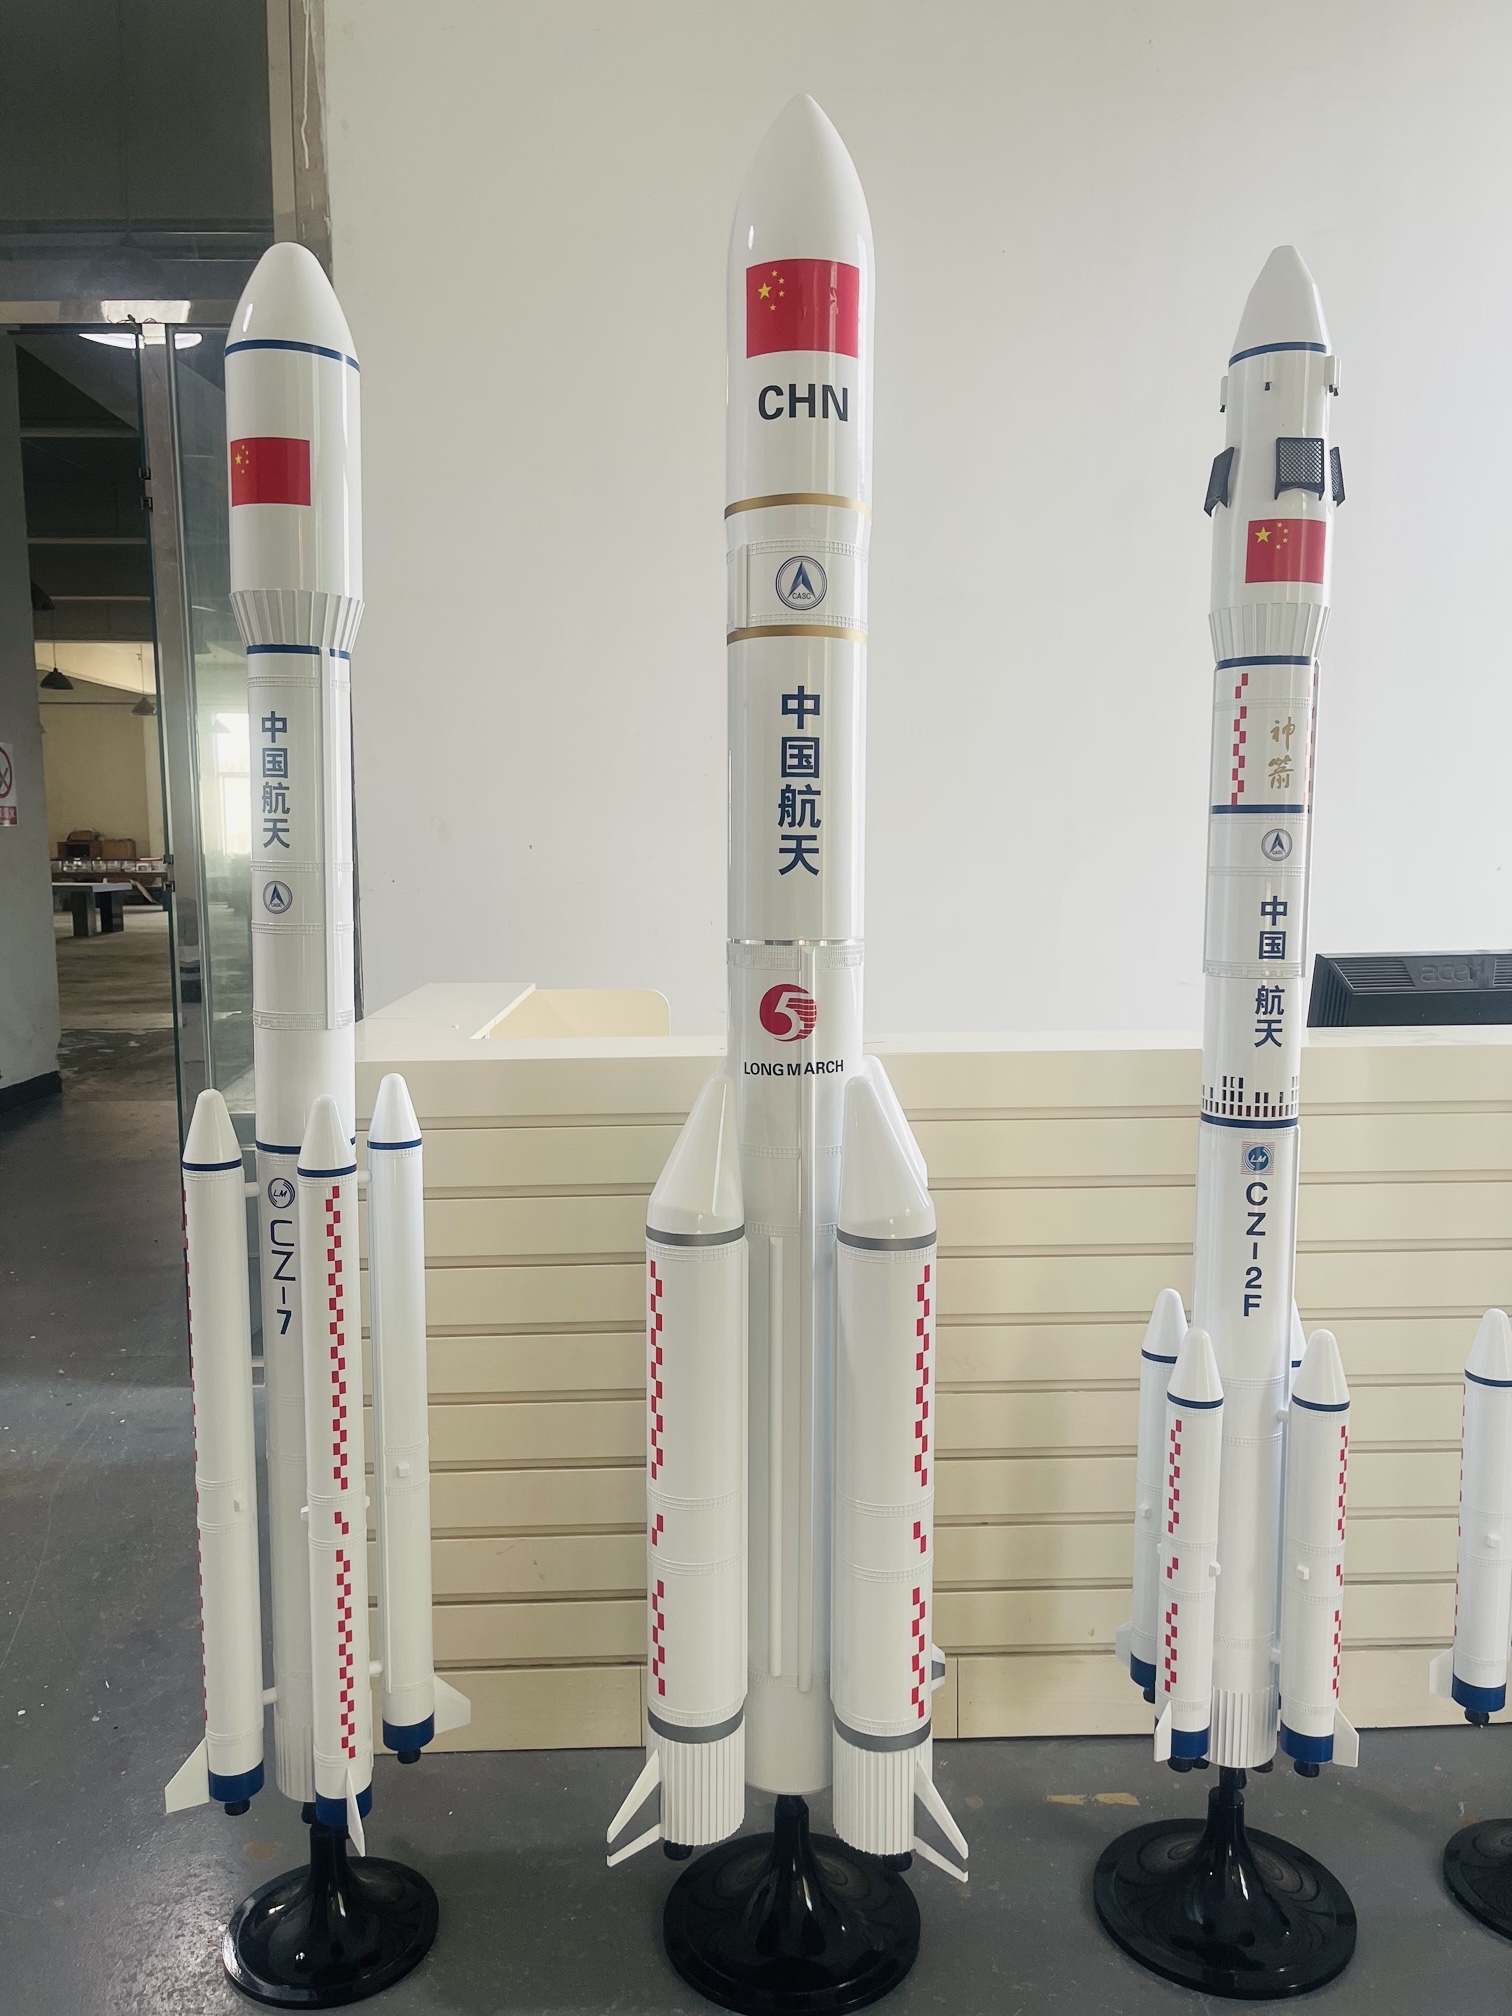 长征系列运载火箭模型制作完工